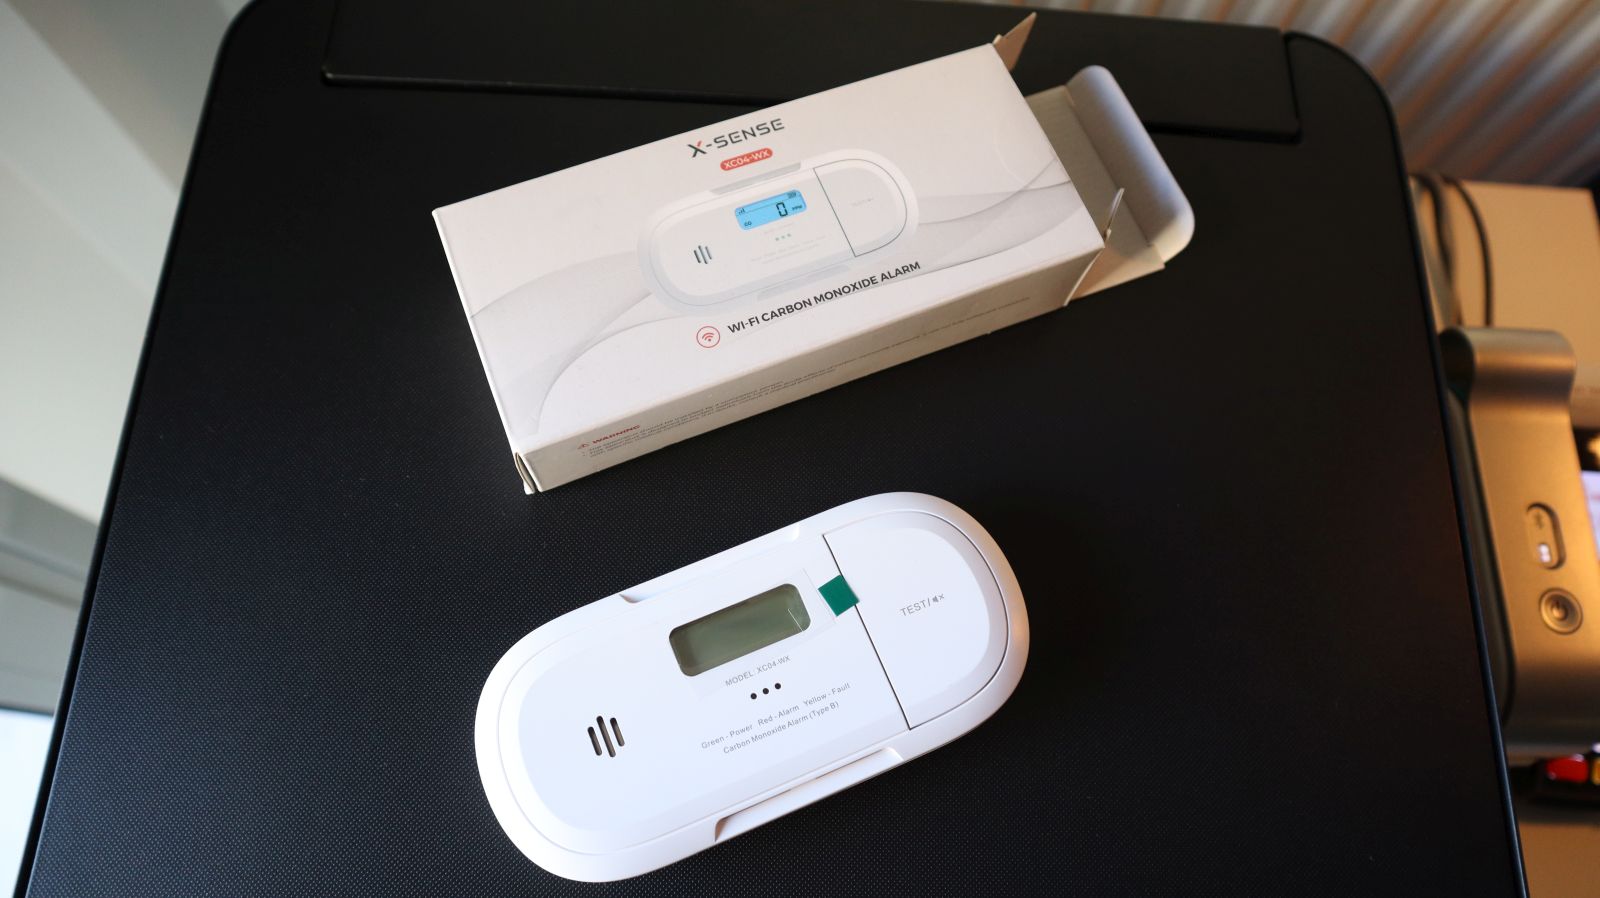 Detect Carbon Monoxide using a Smart X-Sense Home Security App